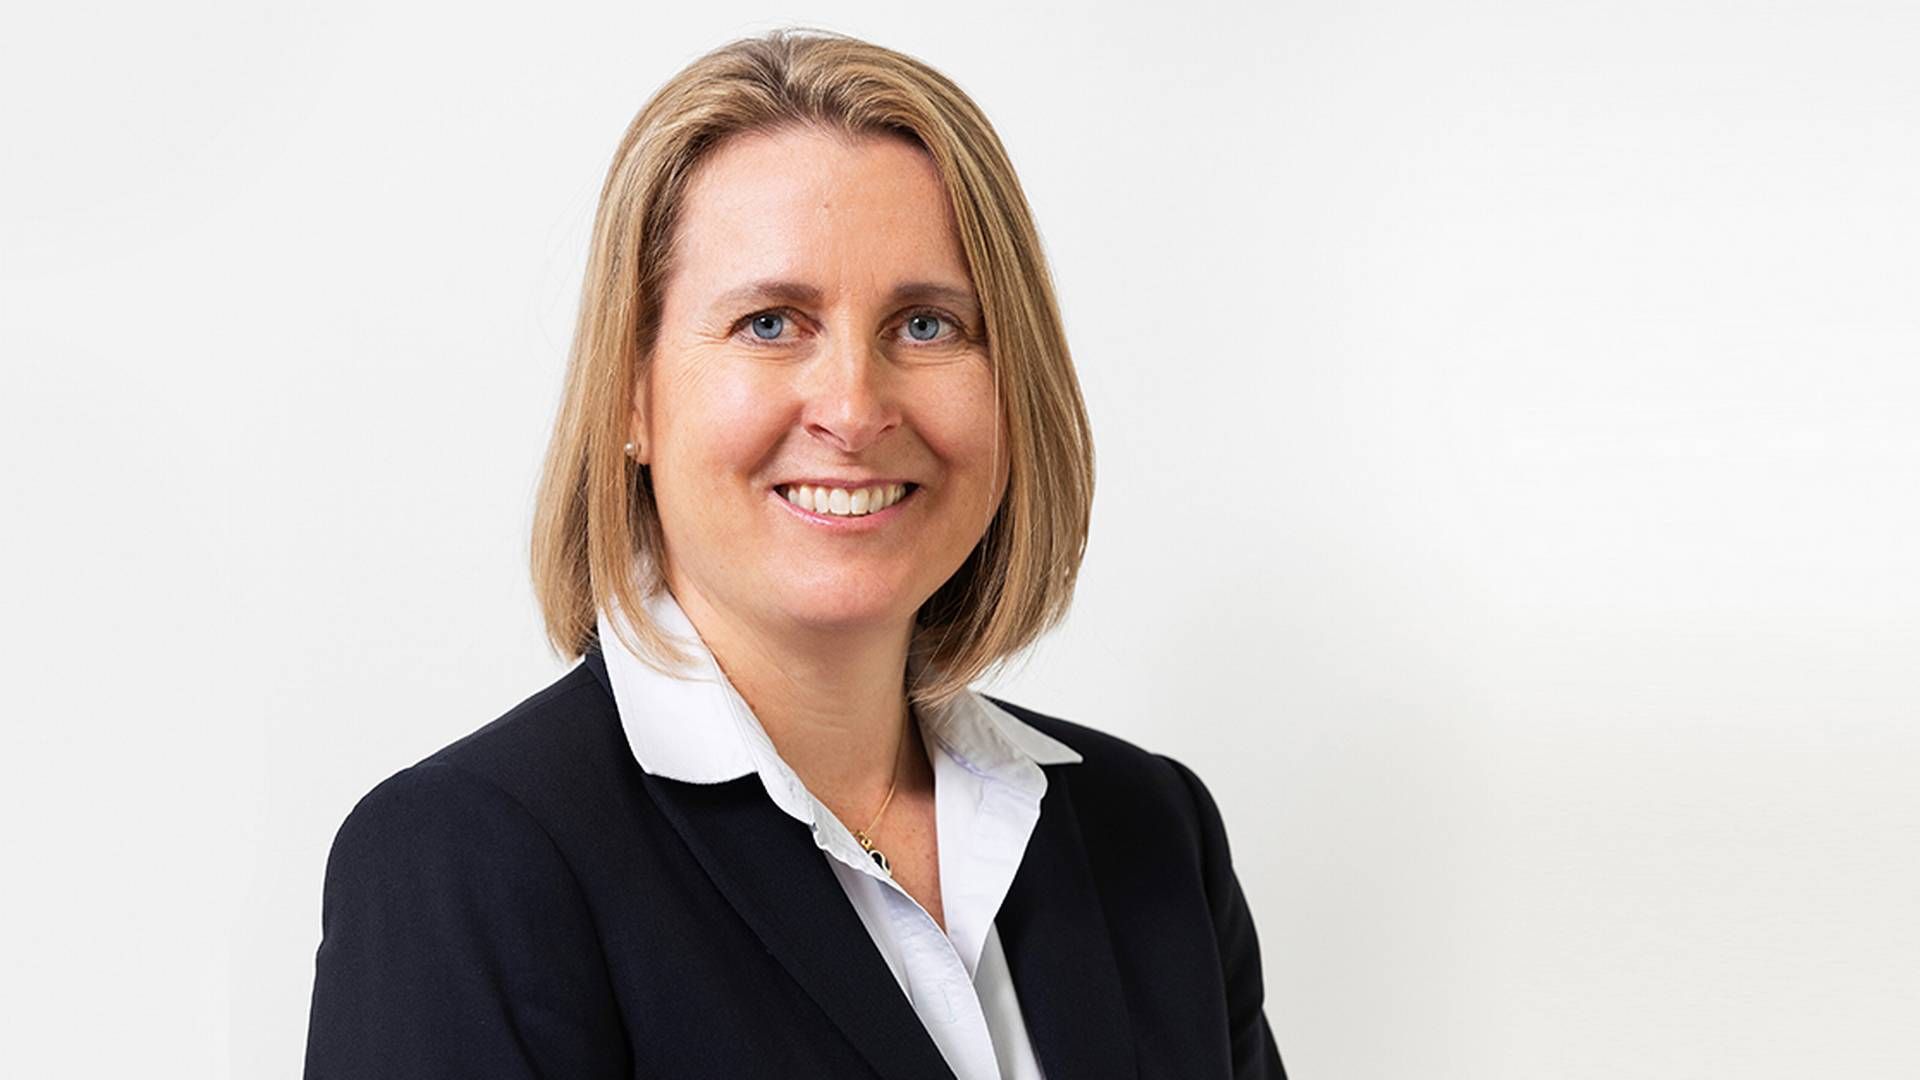 Magdalena Wahlqvist Alveskog has been CEO of Handelsbanken Fonder since 2019. | Photo: Handelsbanken/PR